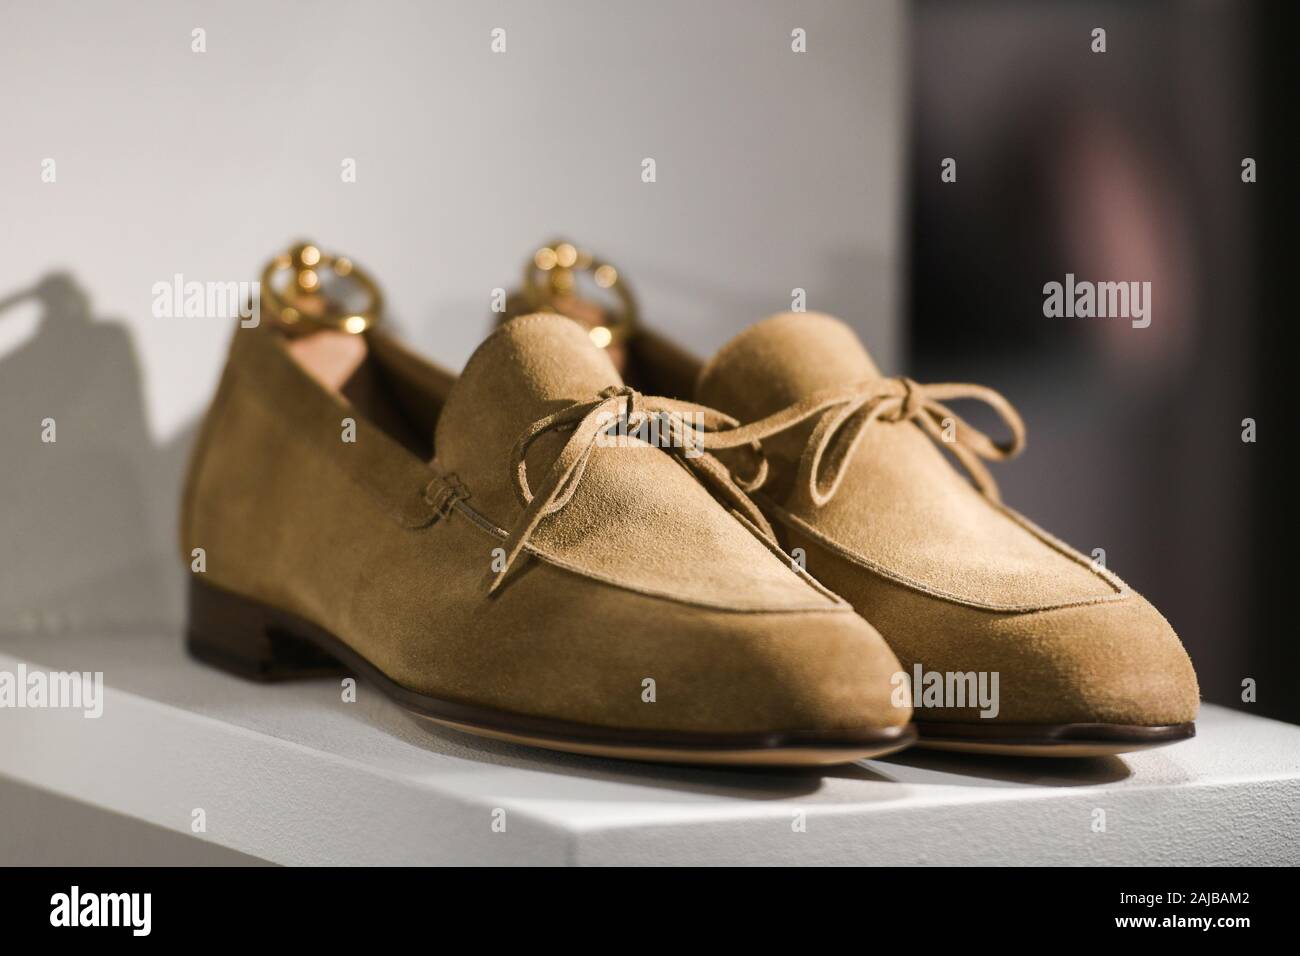 Zapatos tods e imágenes de resolución - Alamy